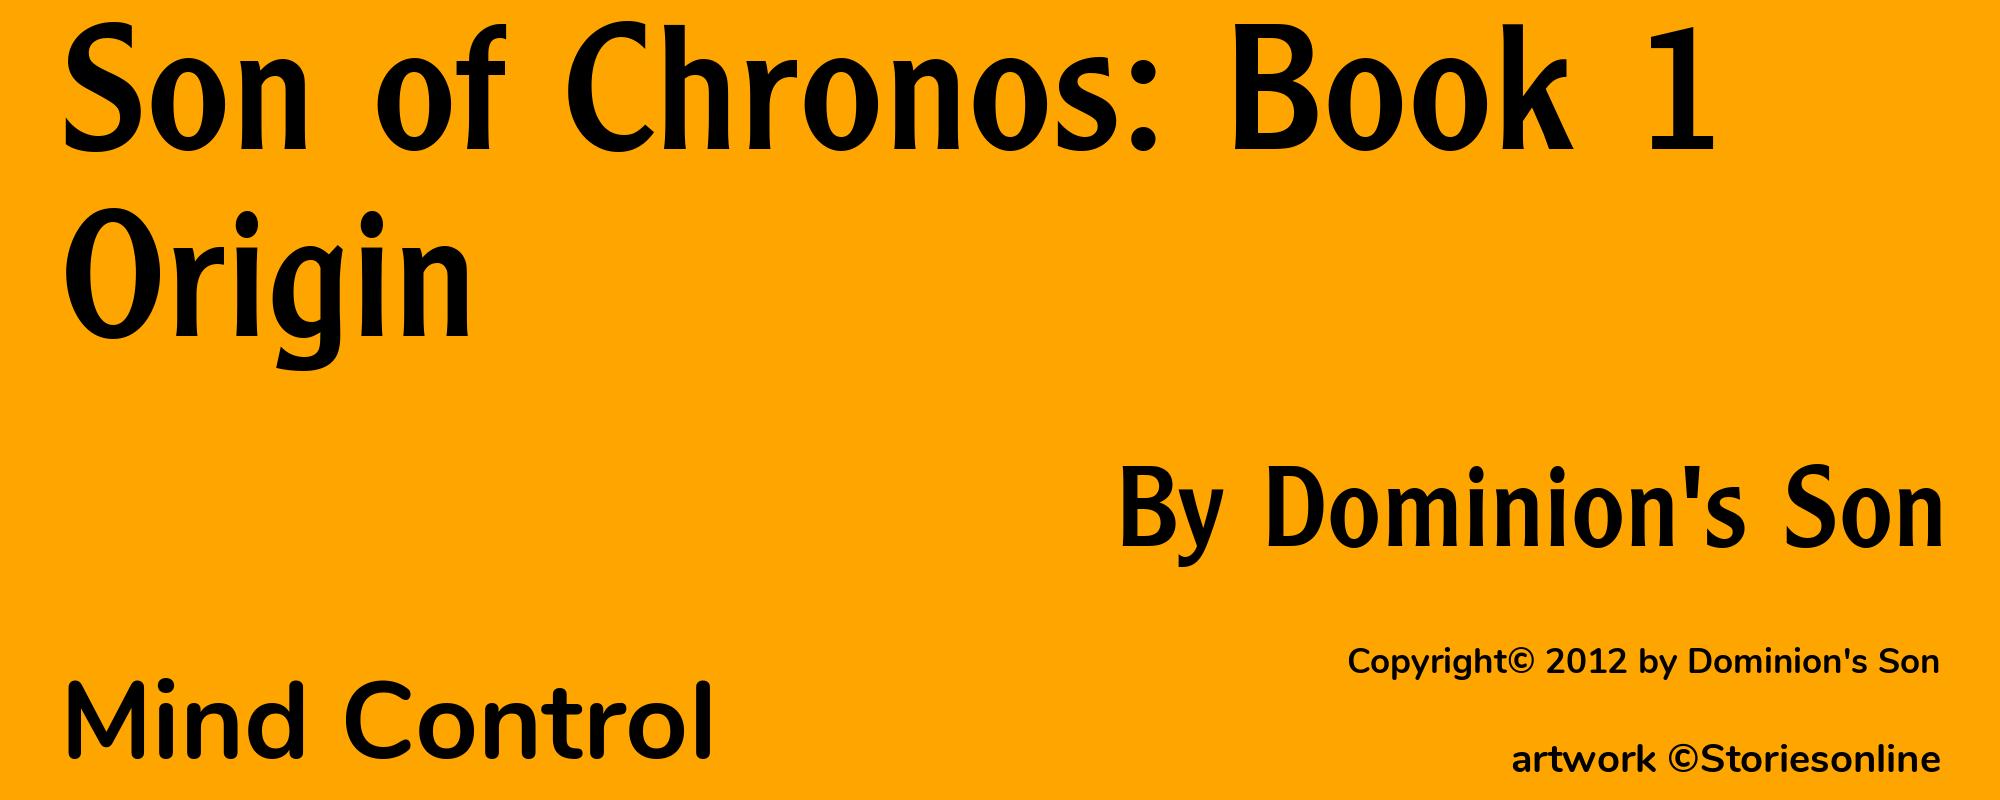 Son of Chronos: Book 1 Origin - Cover